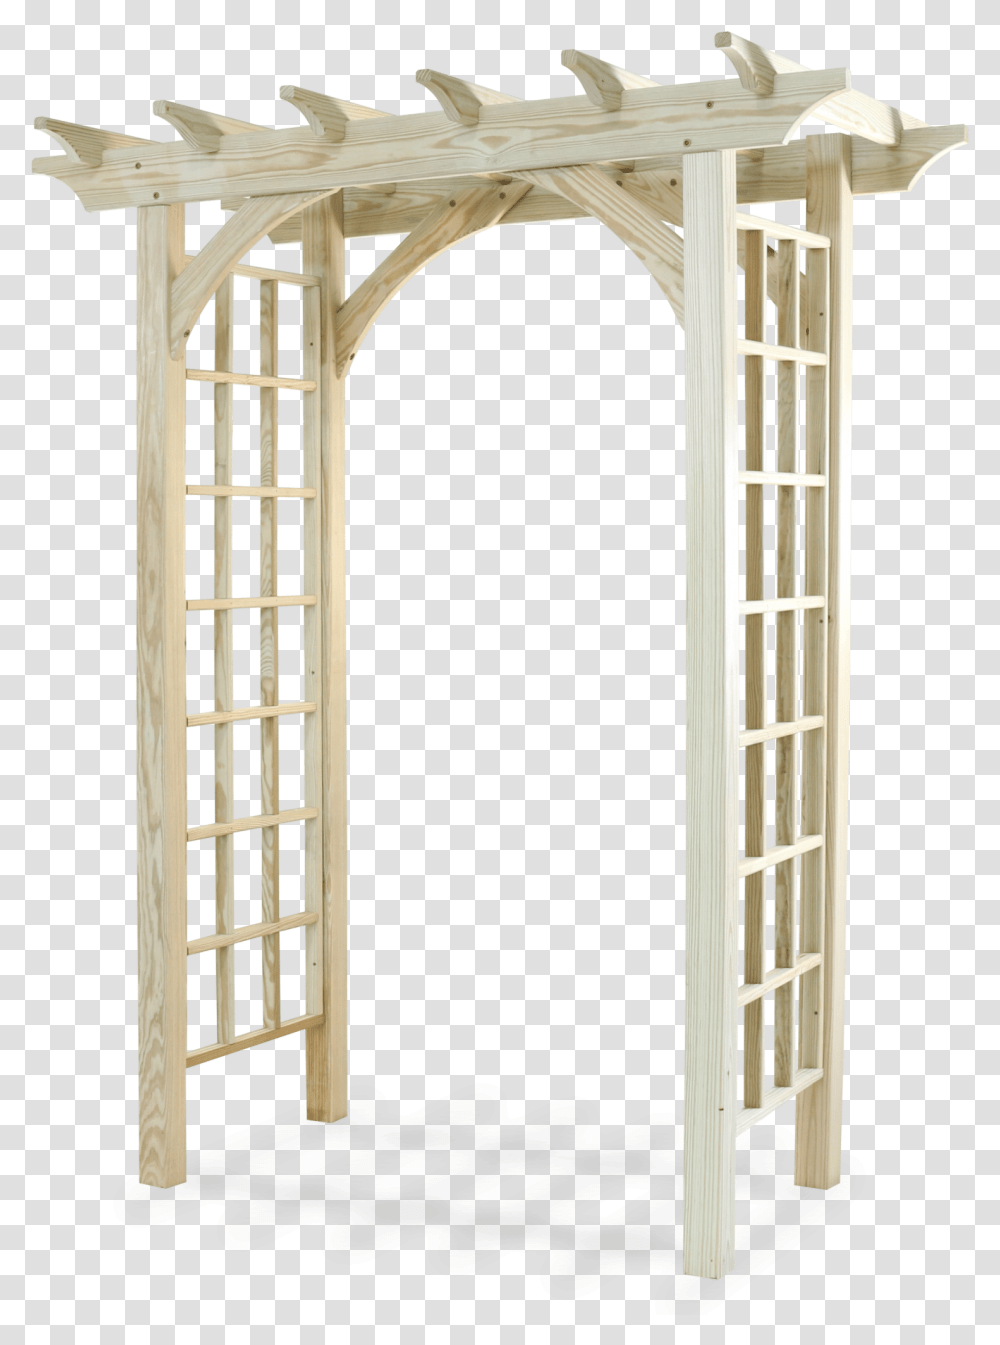 Triumphal Arch, Architecture, Building, Gate, Arched Transparent Png